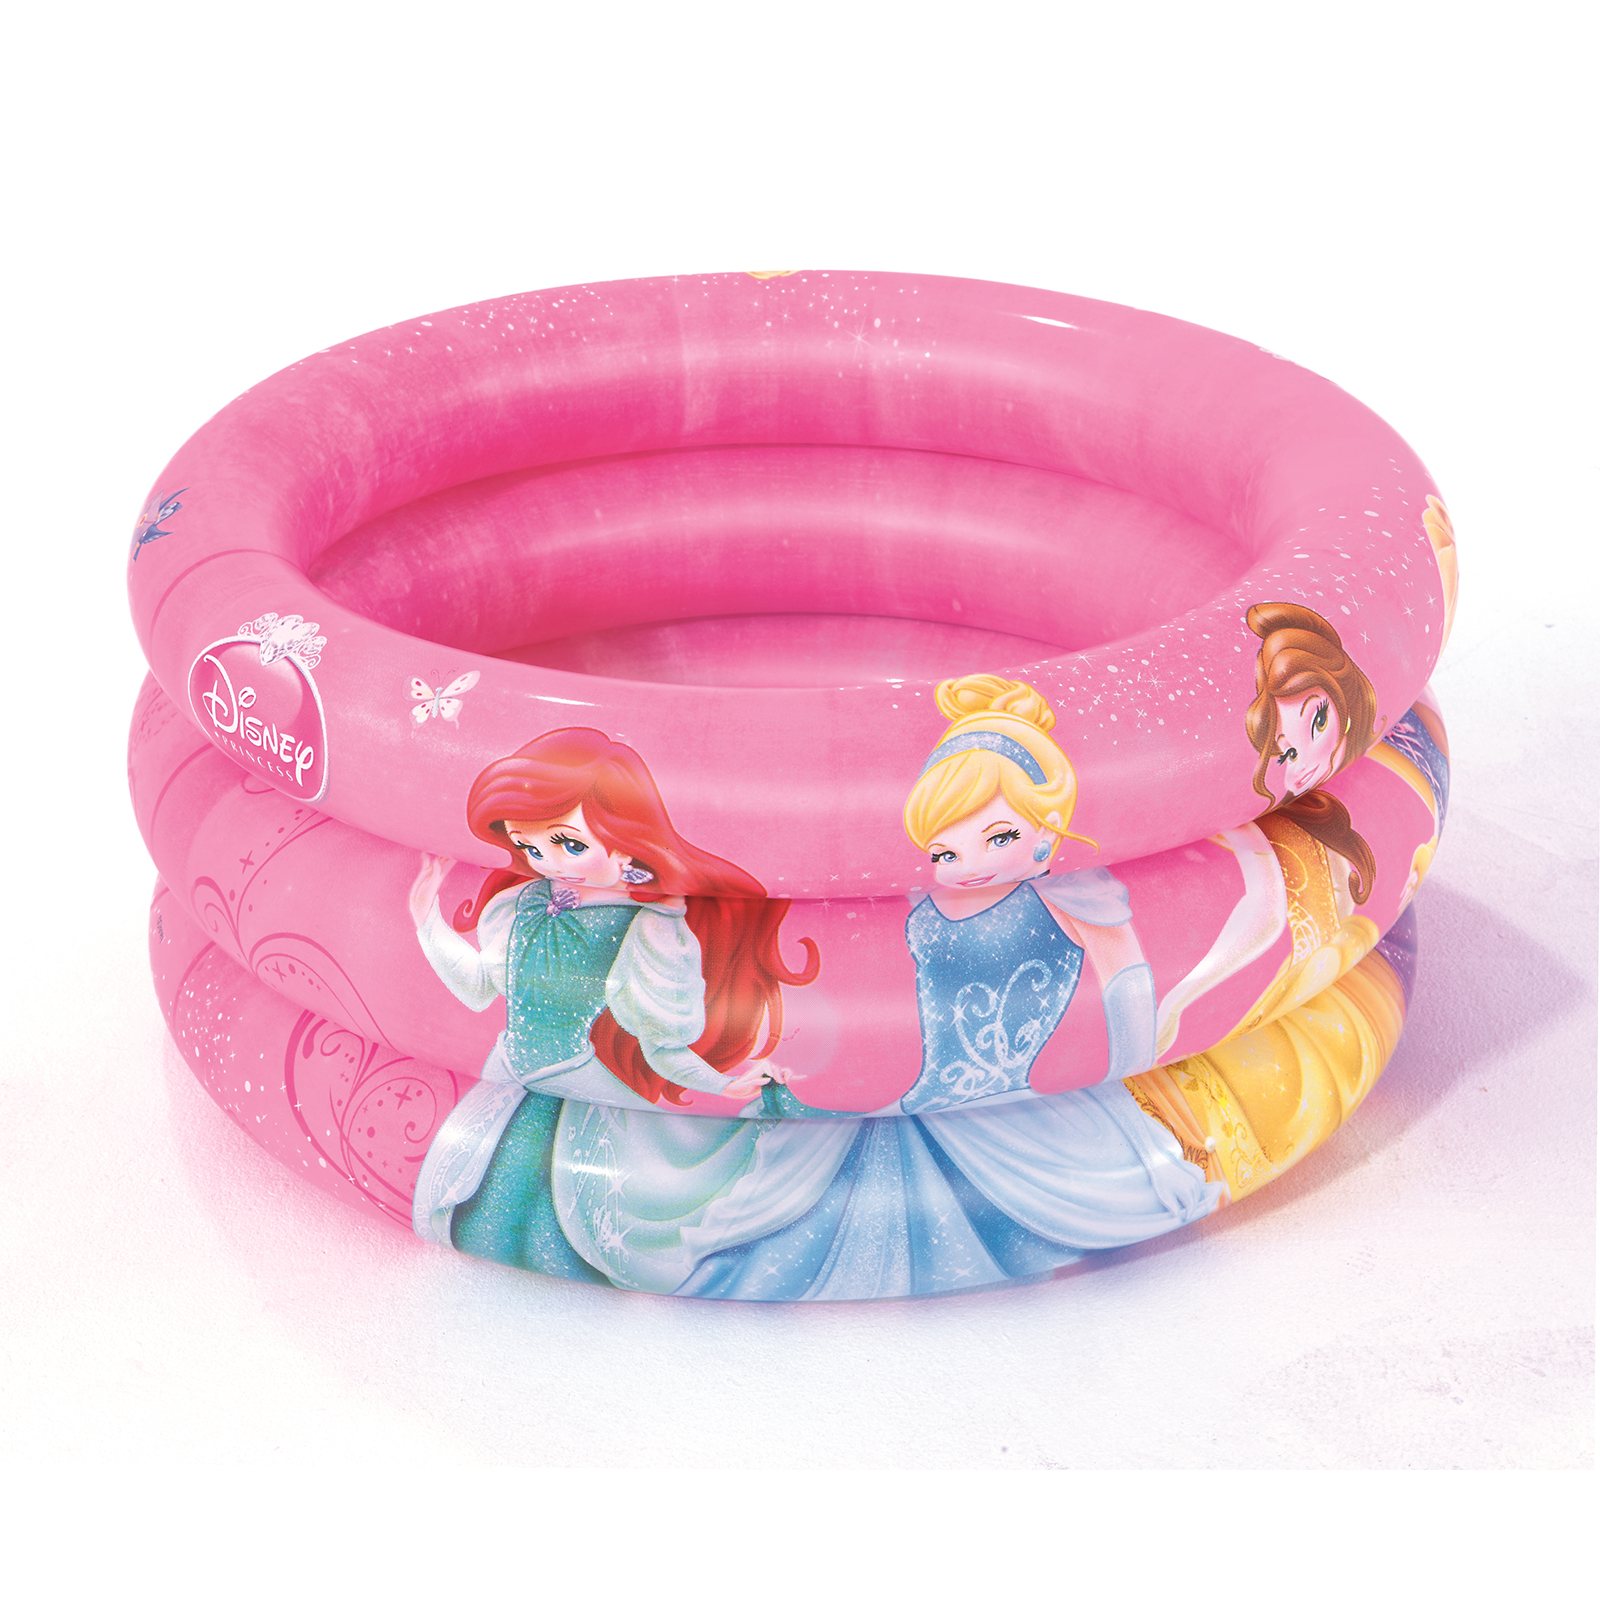 Piscina Hinchable Autoportante Infantil Bestway 70x30 Cm Diseño Princesas Disney Rápida Instalación - rosa - 